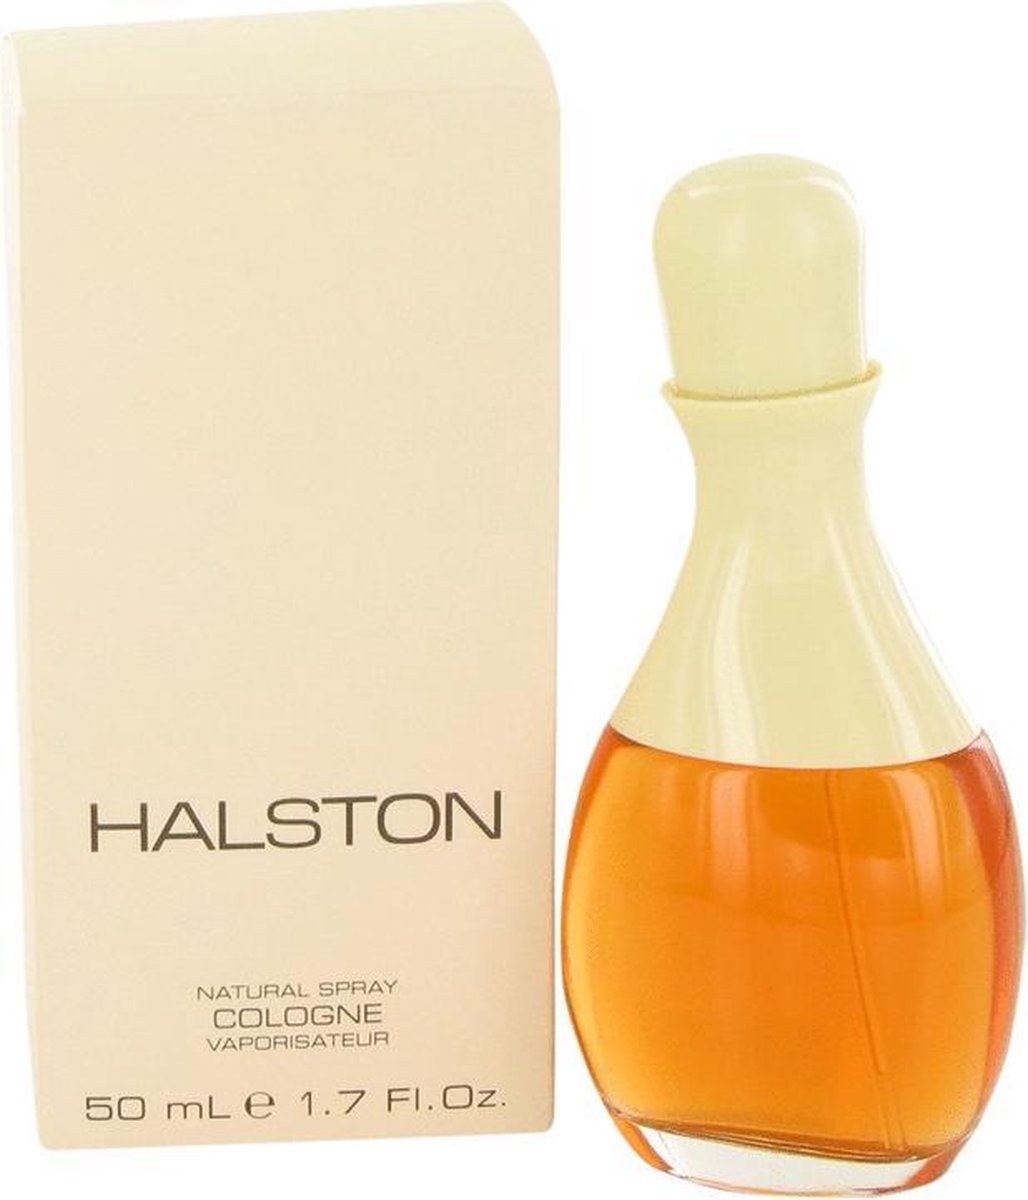 HALSTON by Halston 50 ml - Cologne Spray